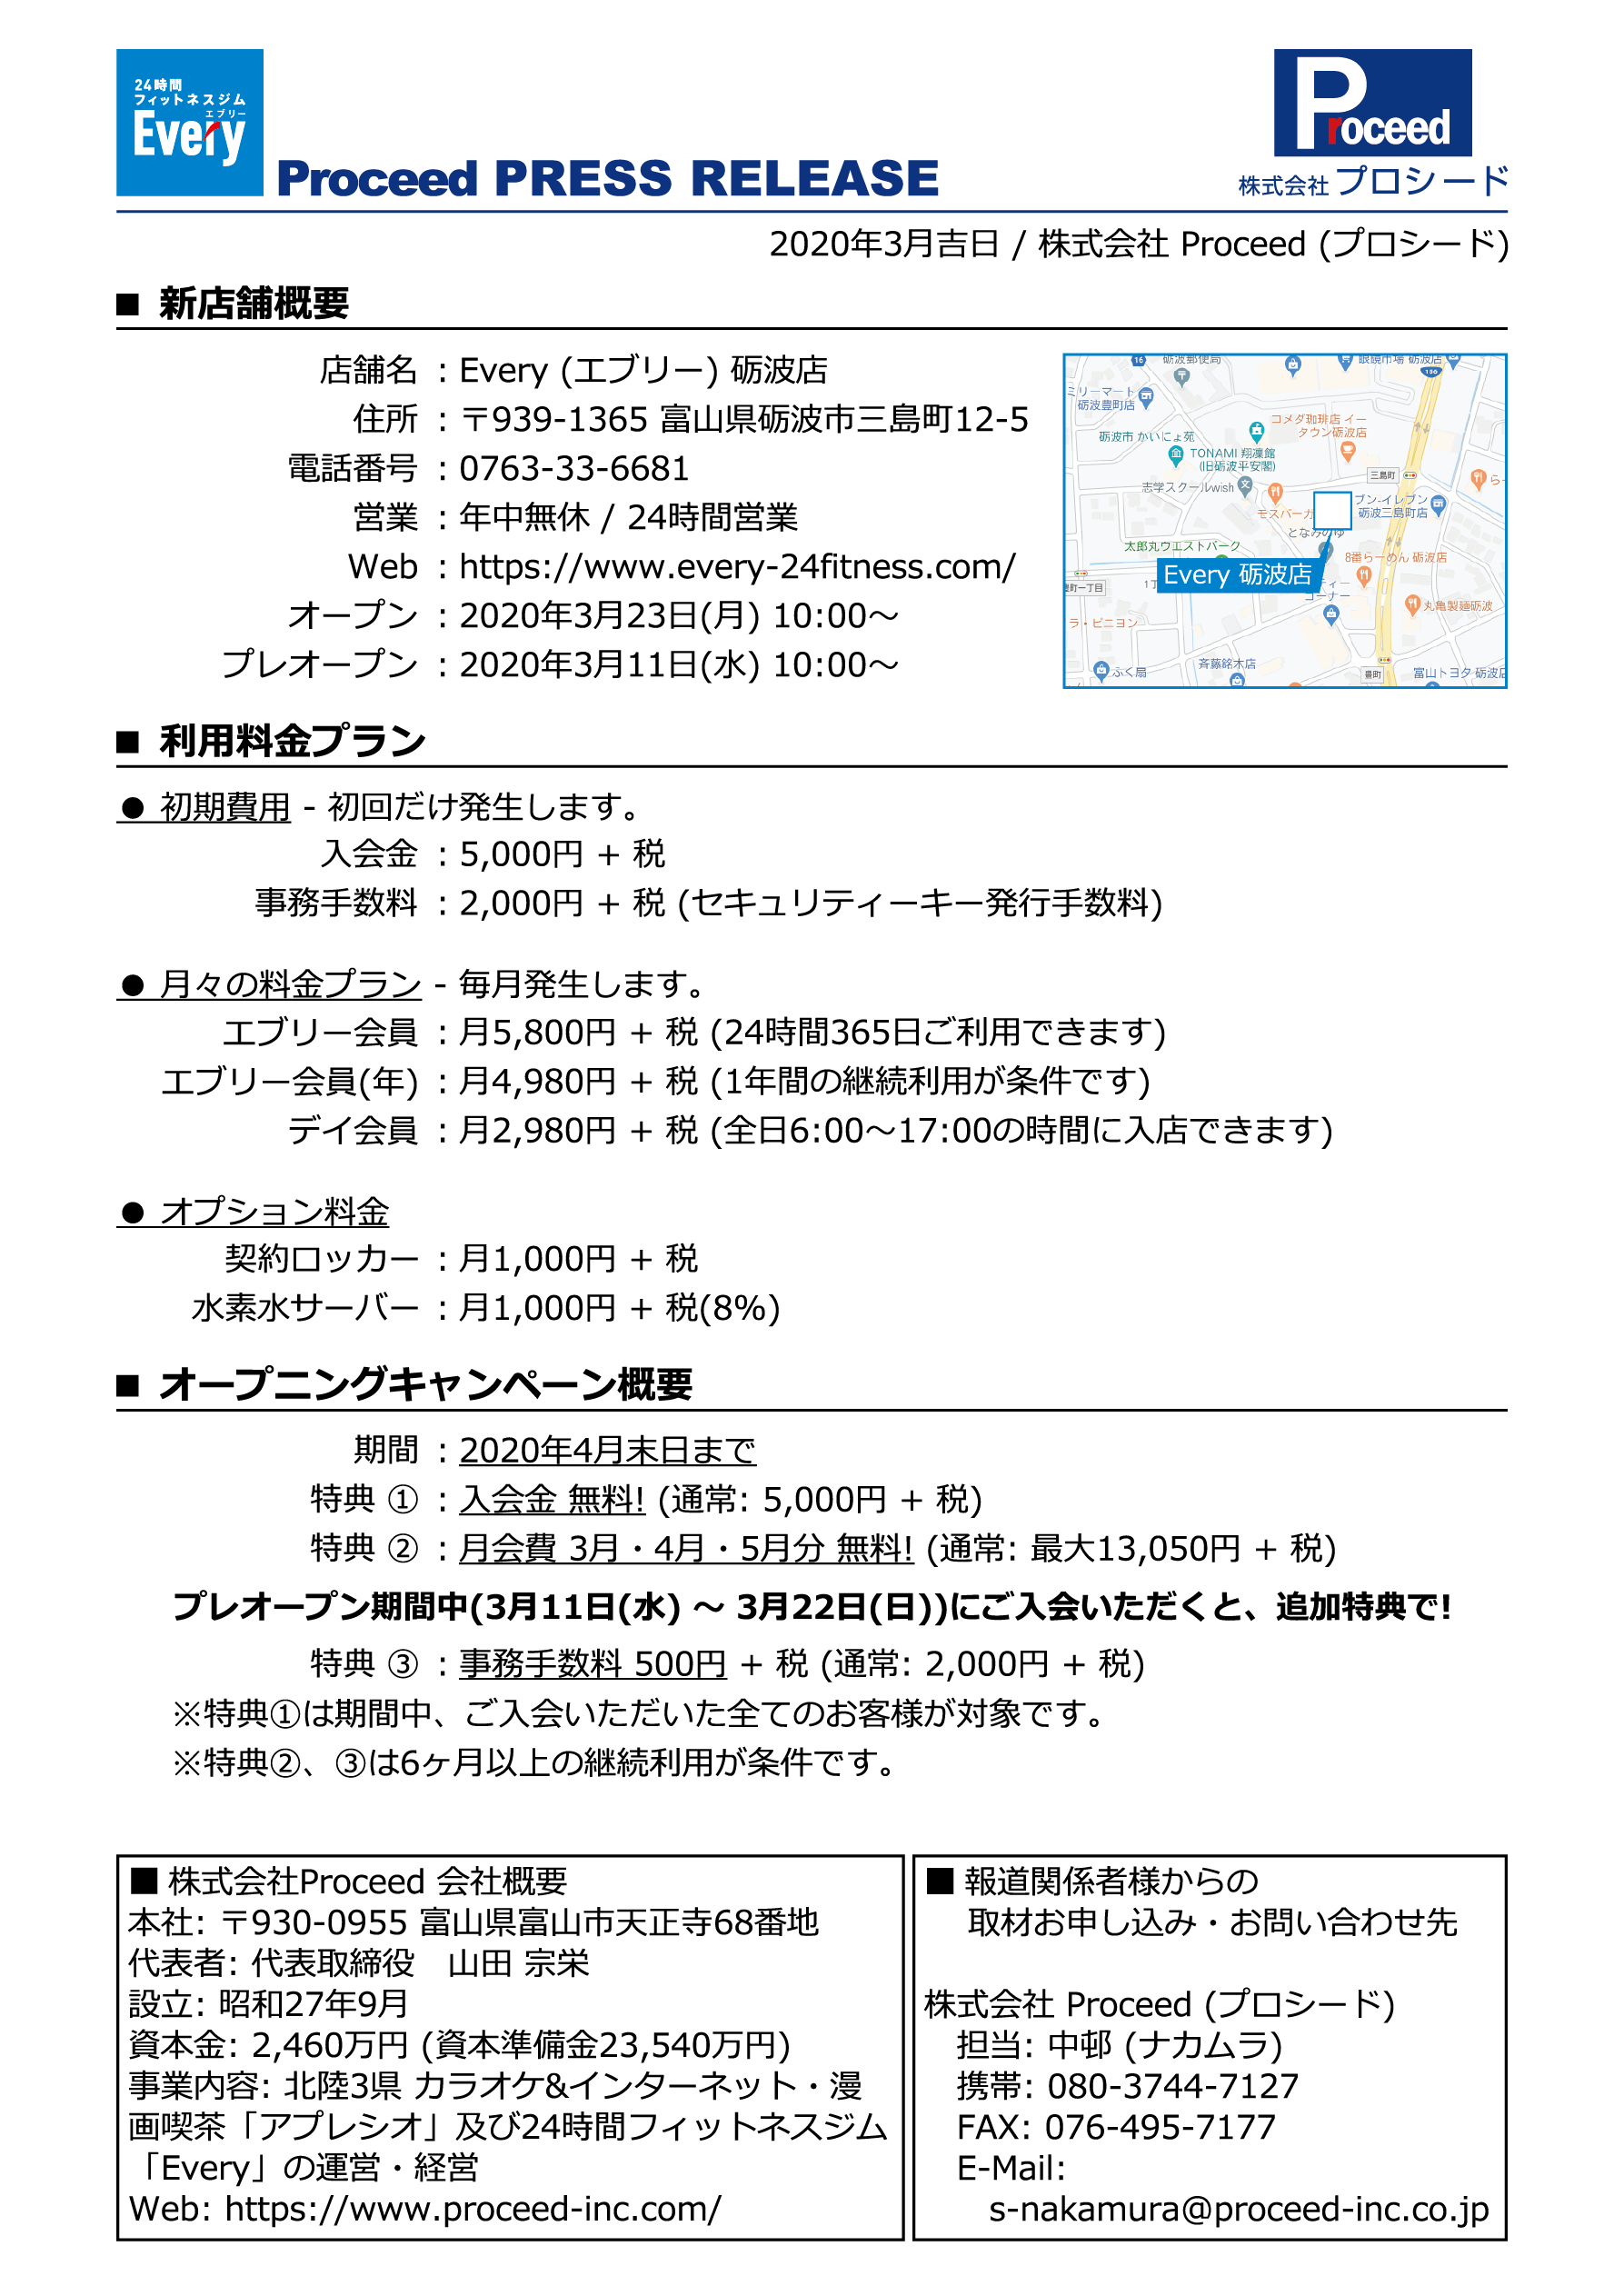 2020/3【プレスリリース】Every 砺波店 オープンのお知らせ 〜3/11(水)よりプレオープン開始!! 〜 2